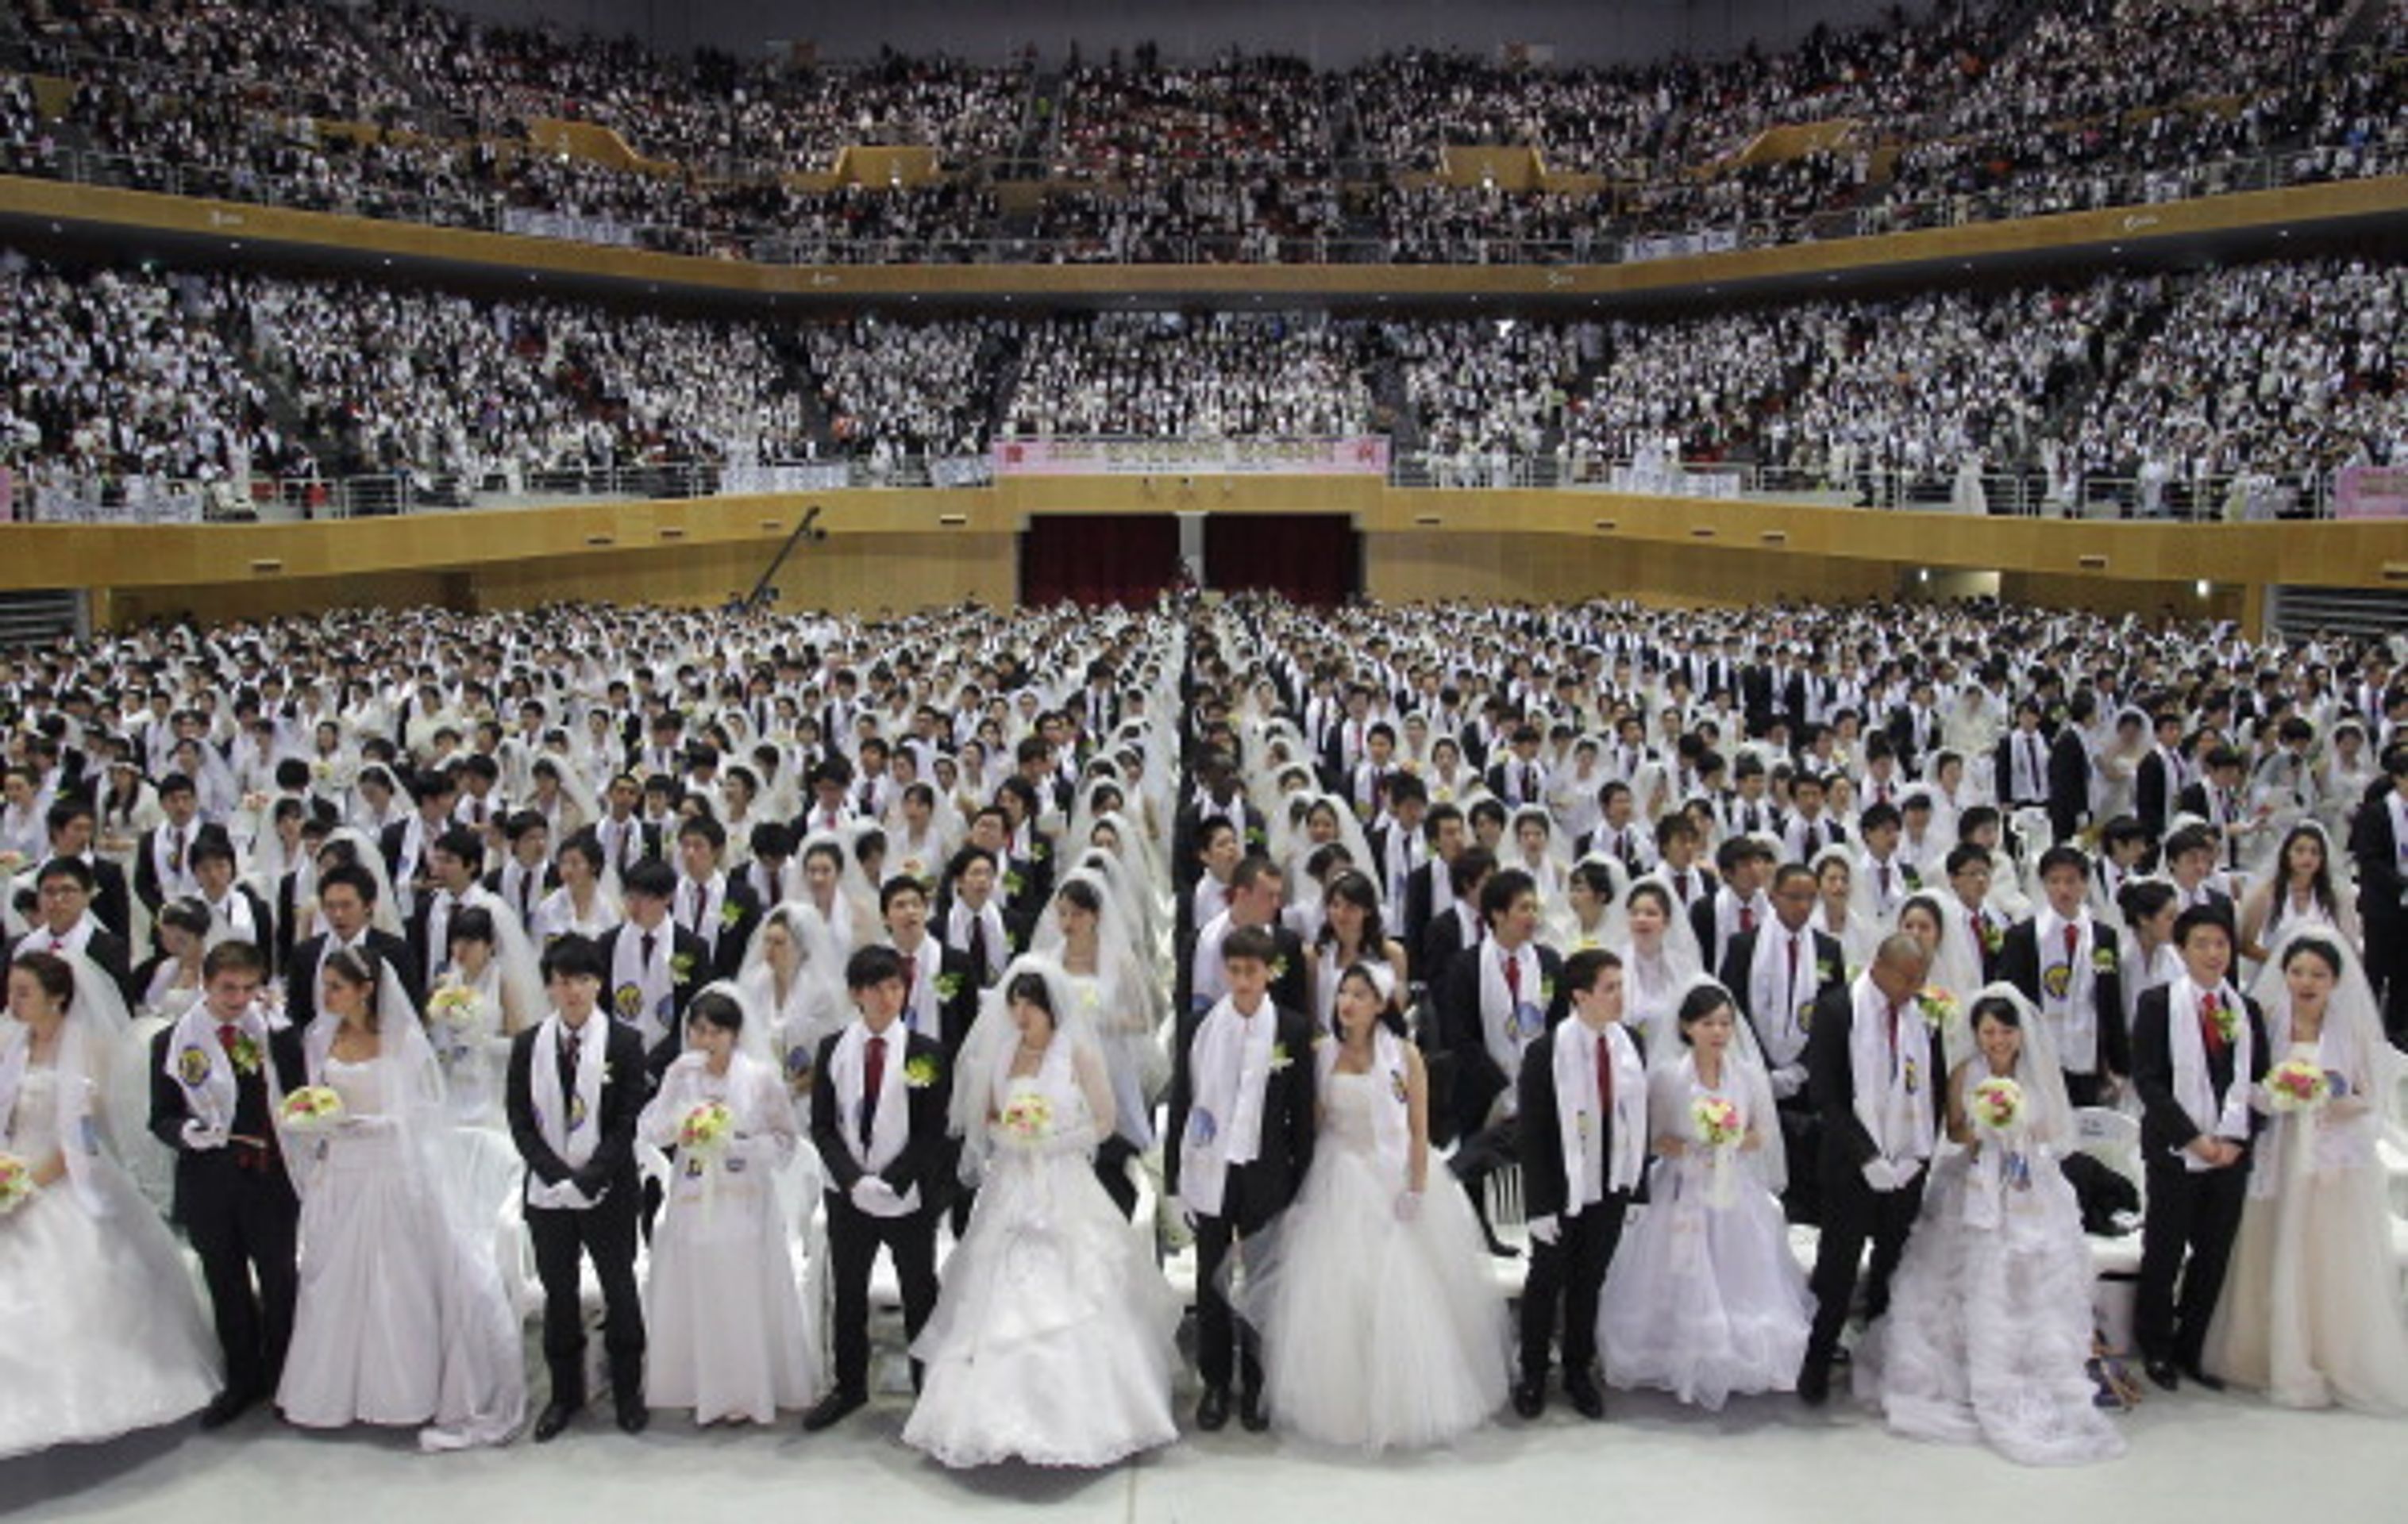 Hromadná svatba v Jižní Koreji - 11 - Svatba ve velkém stylu: Bralo se 3500 párů najednou! (2/12)